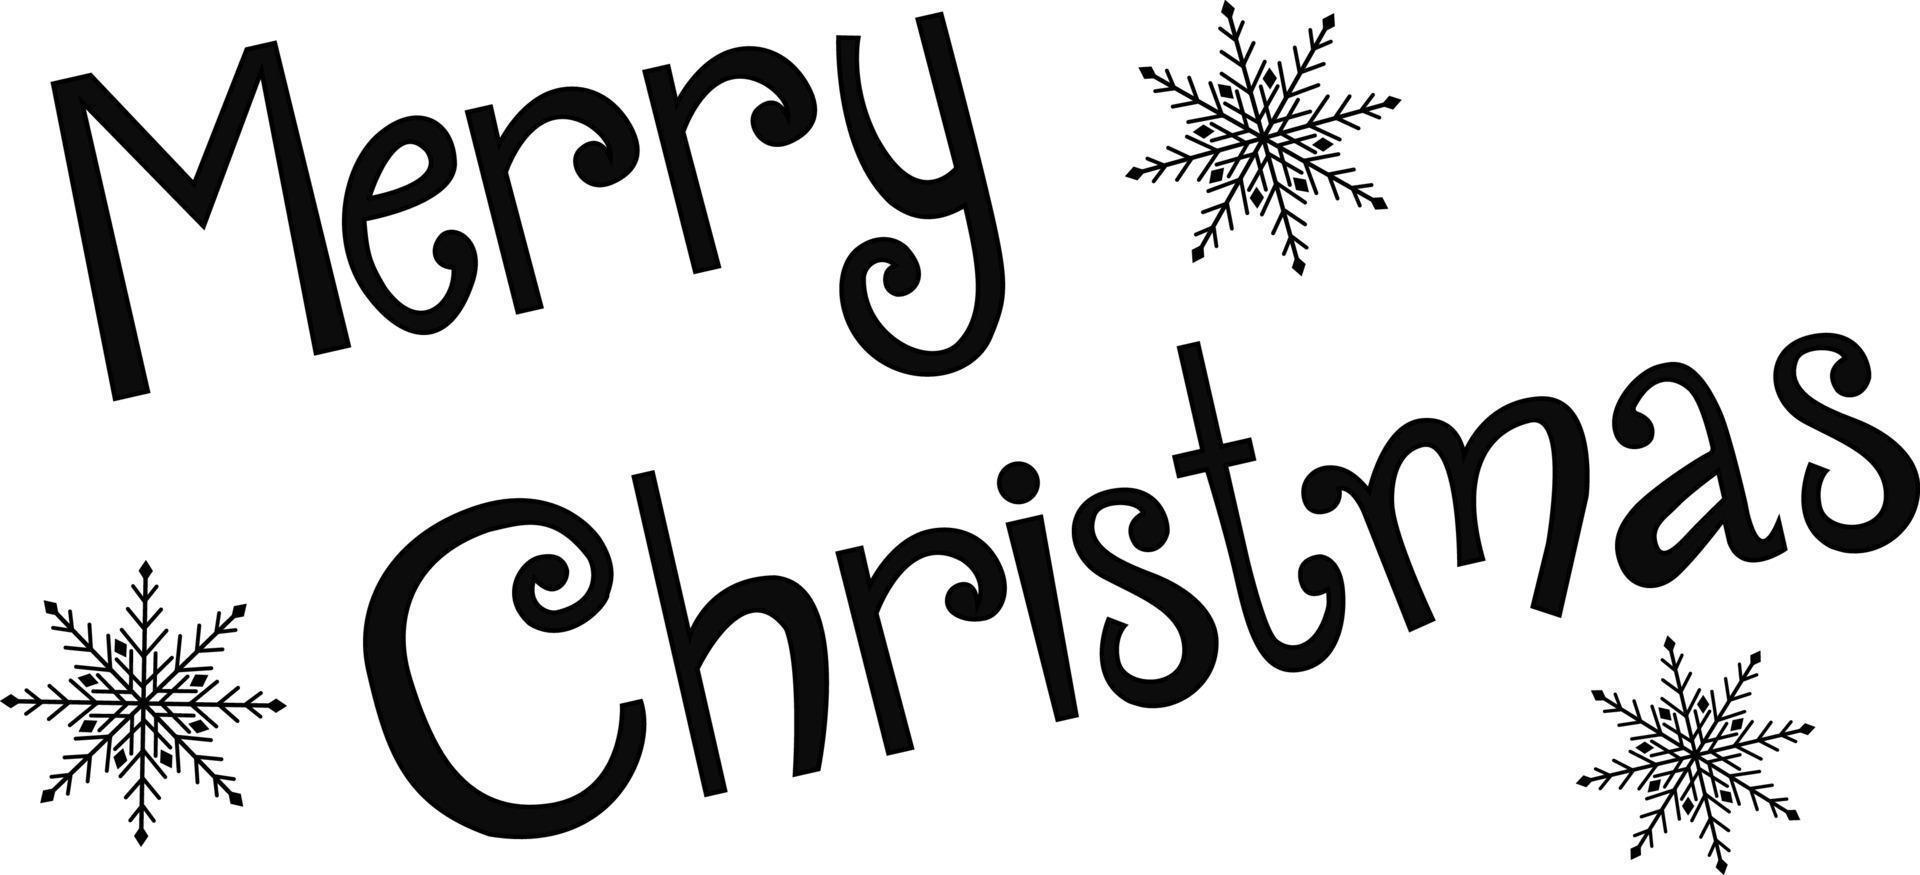 vector illustratie. hand- geschilderd met een elegant modern borstel met de opschrift vrolijk Kerstmis gemarkeerd Aan een wit achtergrond. felicitatie- inscriptie. nieuw jaar hartelijk groeten.